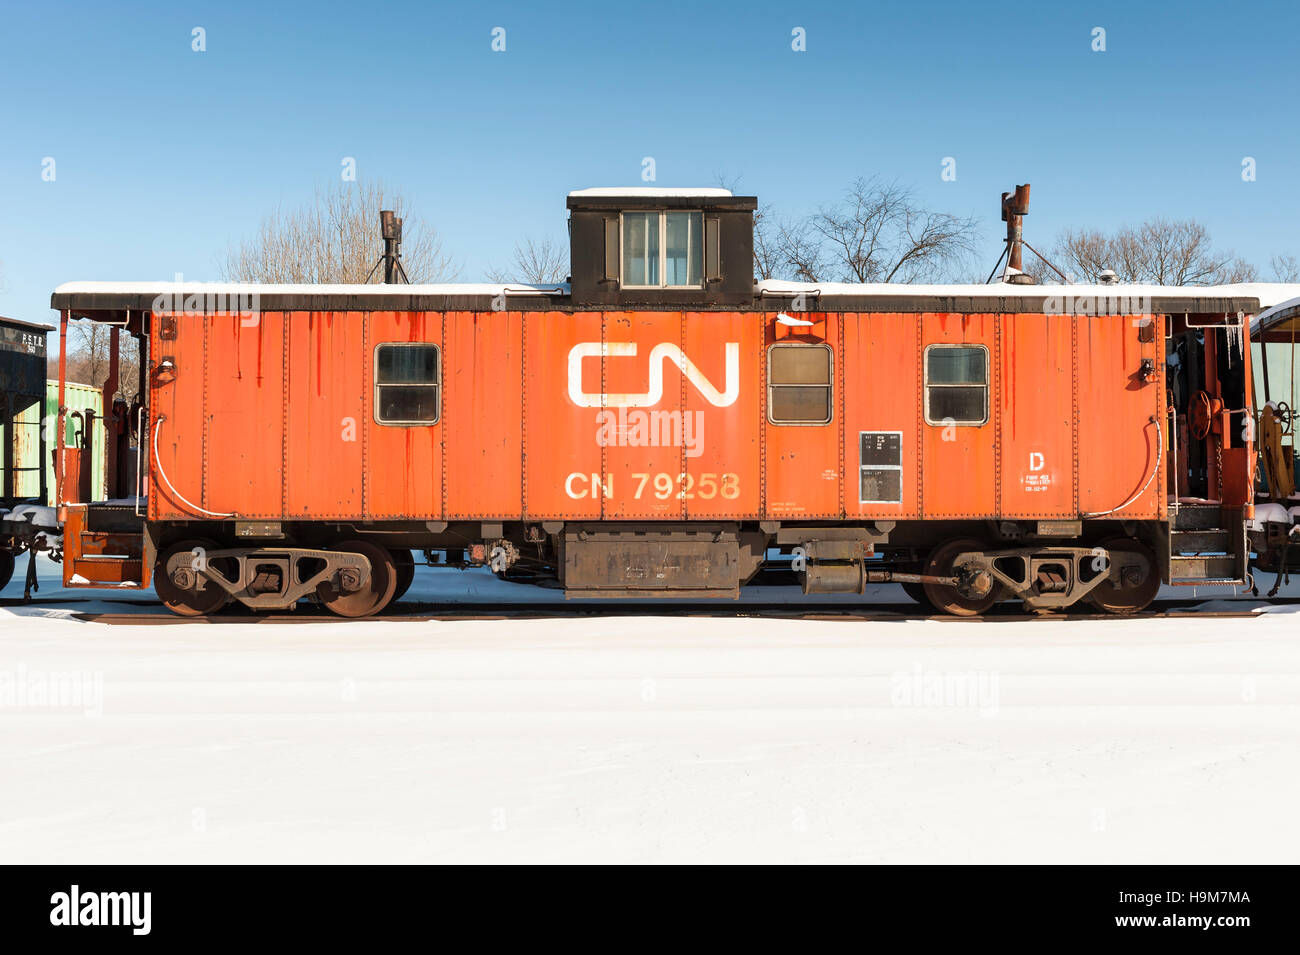 Il vecchio colore arancione Canadian National Railway caboose parcheggiato nel cortile in inverno Foto Stock